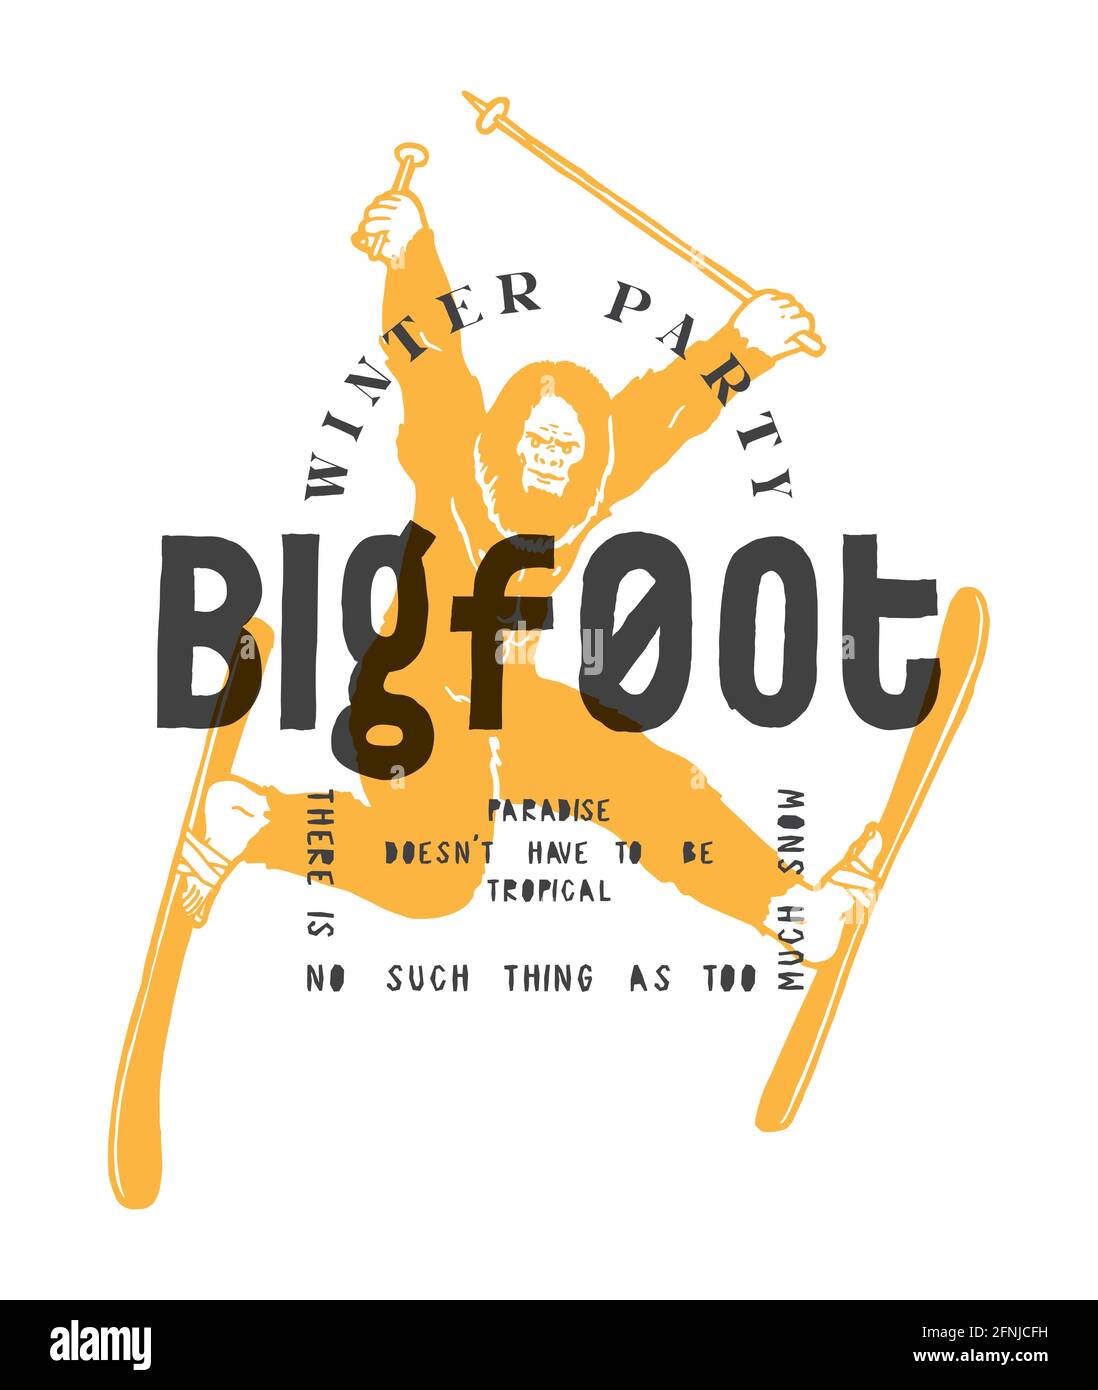 Imprimé typographique de ski de Bigfoot. personnage de sasquatch amusant sur les skis. Imprimé typographique de fête d'hiver. Snow Paradise drôle t-shirt imprimé vecteur illustrat Illustration de Vecteur